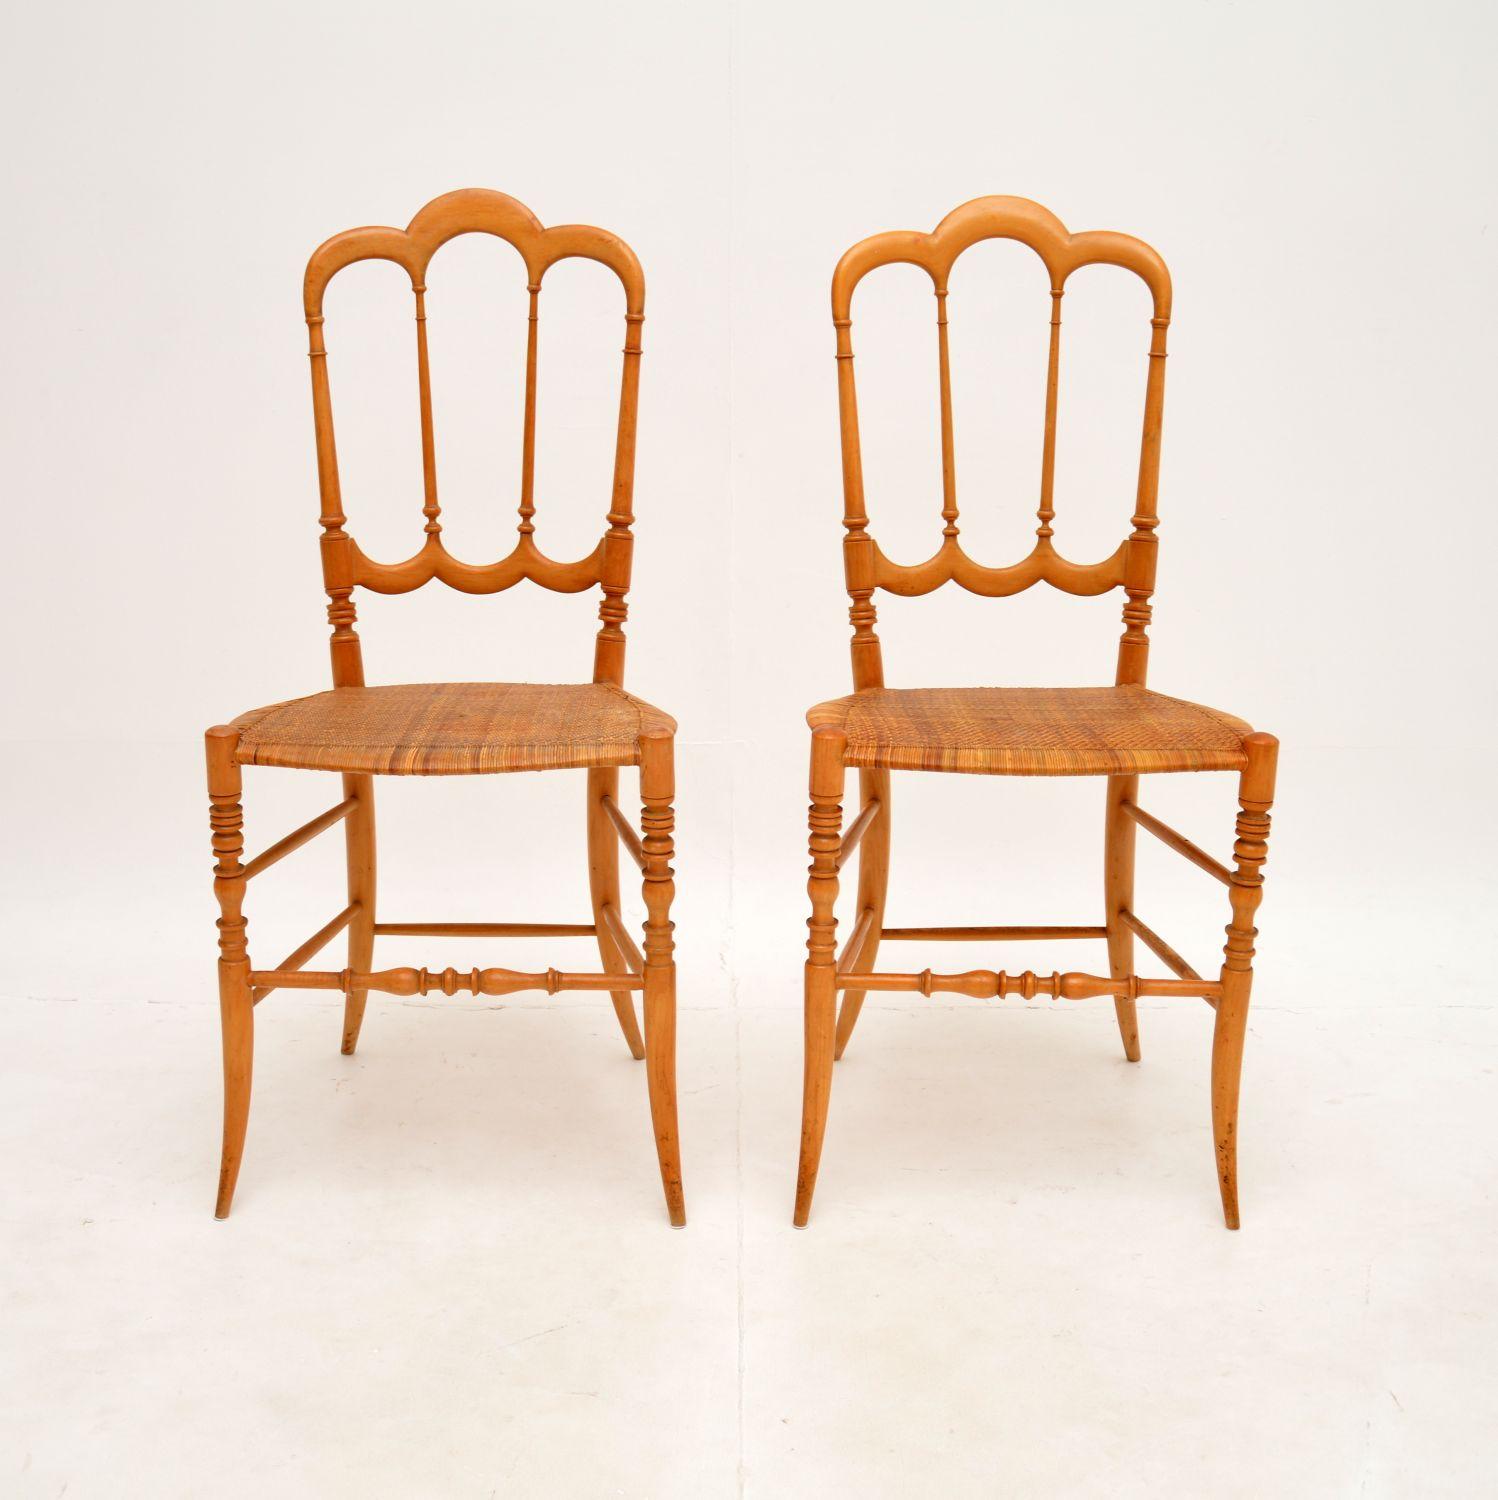 Une superbe paire de chaises Chiavari italiennes vintage 'Tre Archi' de Fratelli Levaggi. Chaque chaise est estampillée 